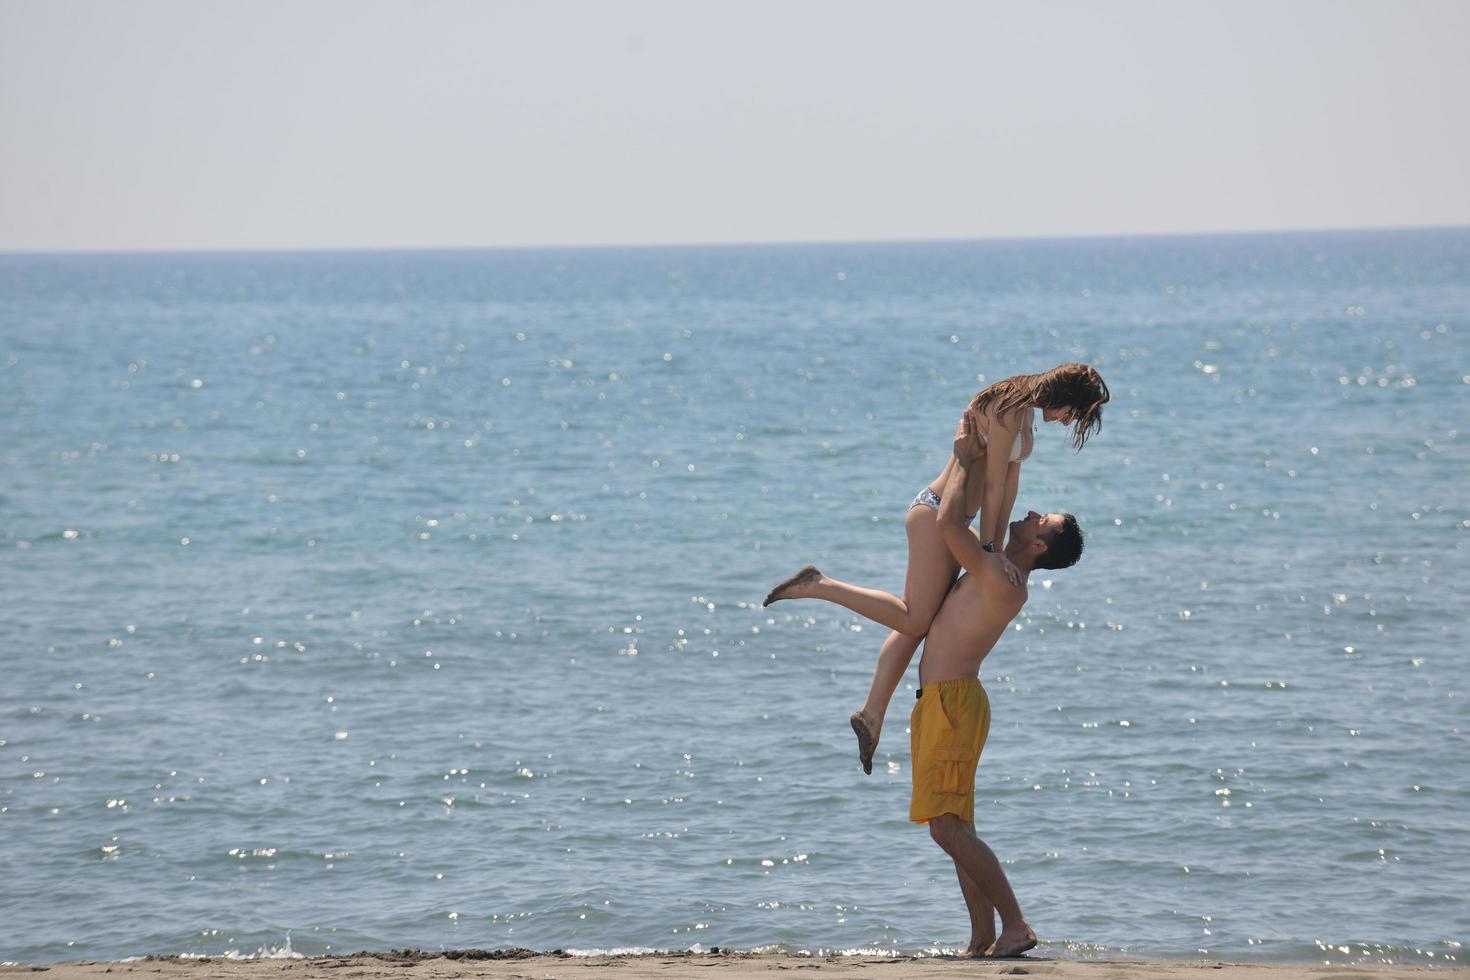 heureux jeune couple s'amuser sur la plage photo